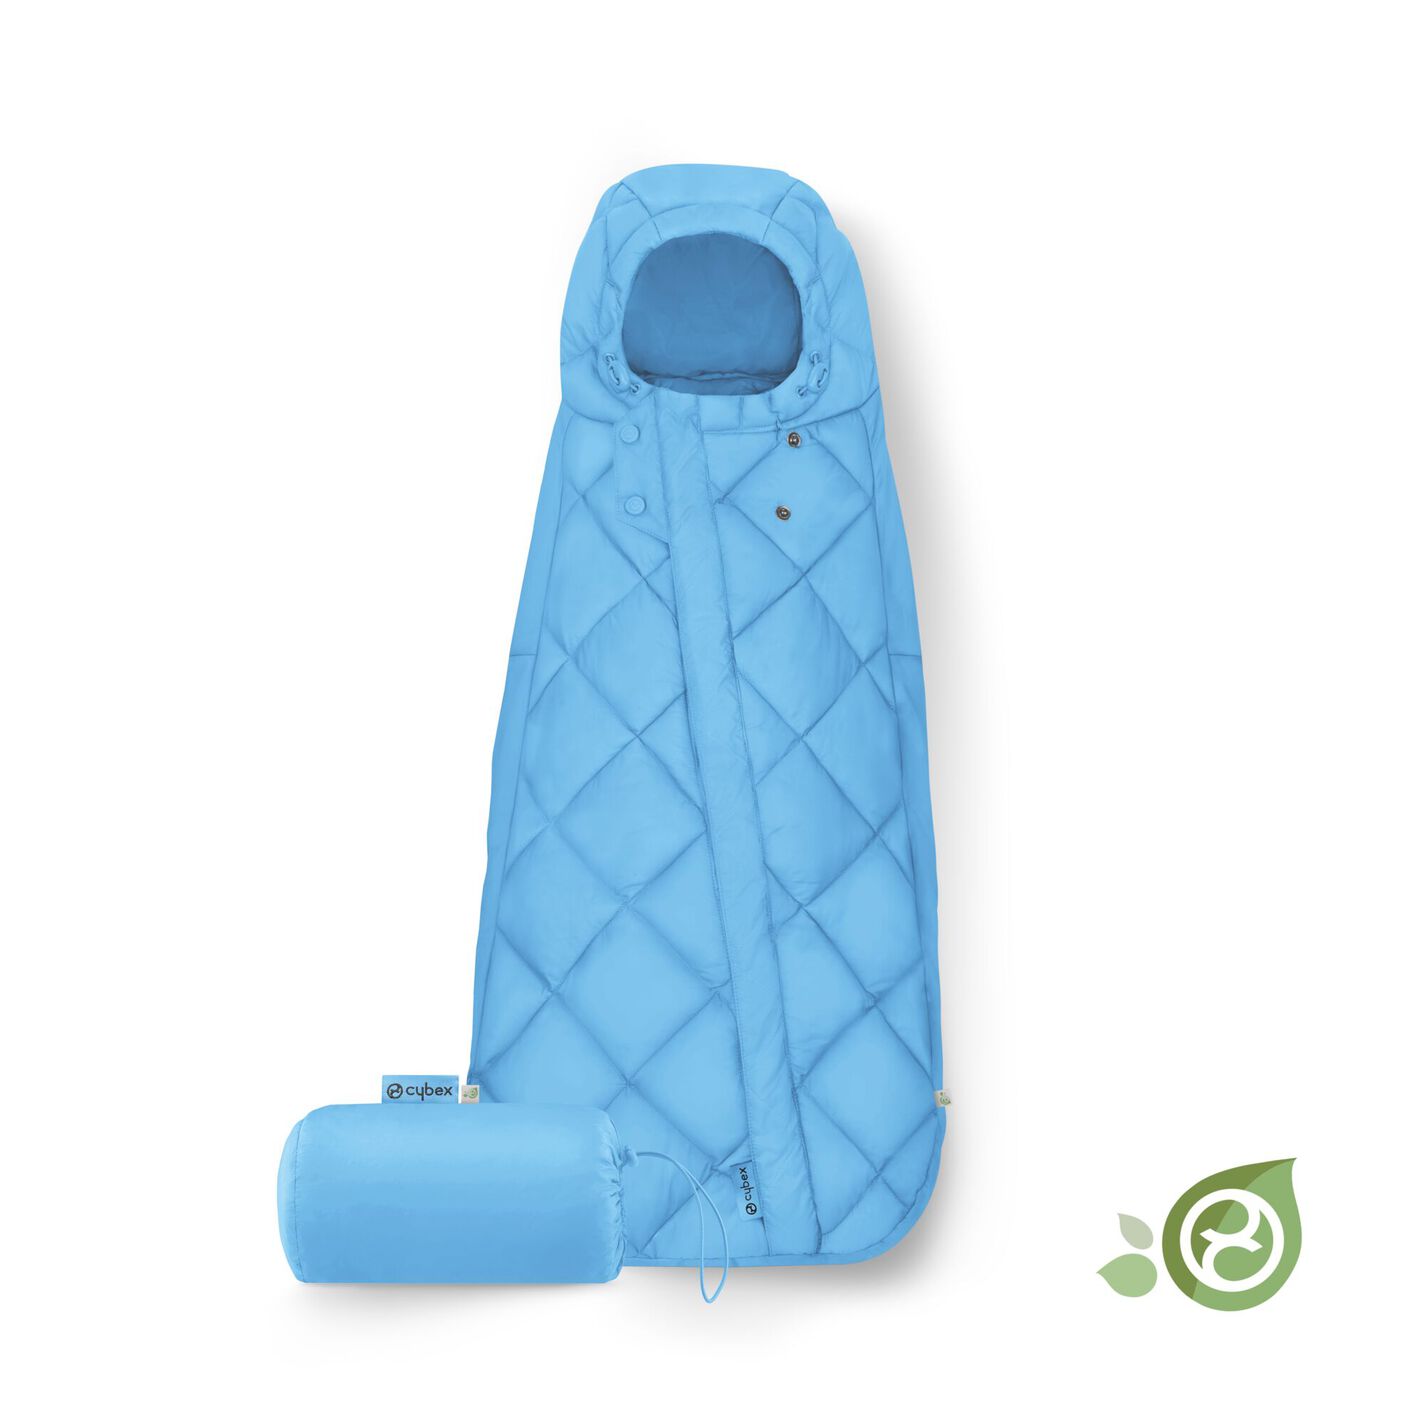 Produktbild: Snogga Mini 2 von Cybex im Onlineshop von dasMikruli - Dein Shop für Baby Erstausstattung